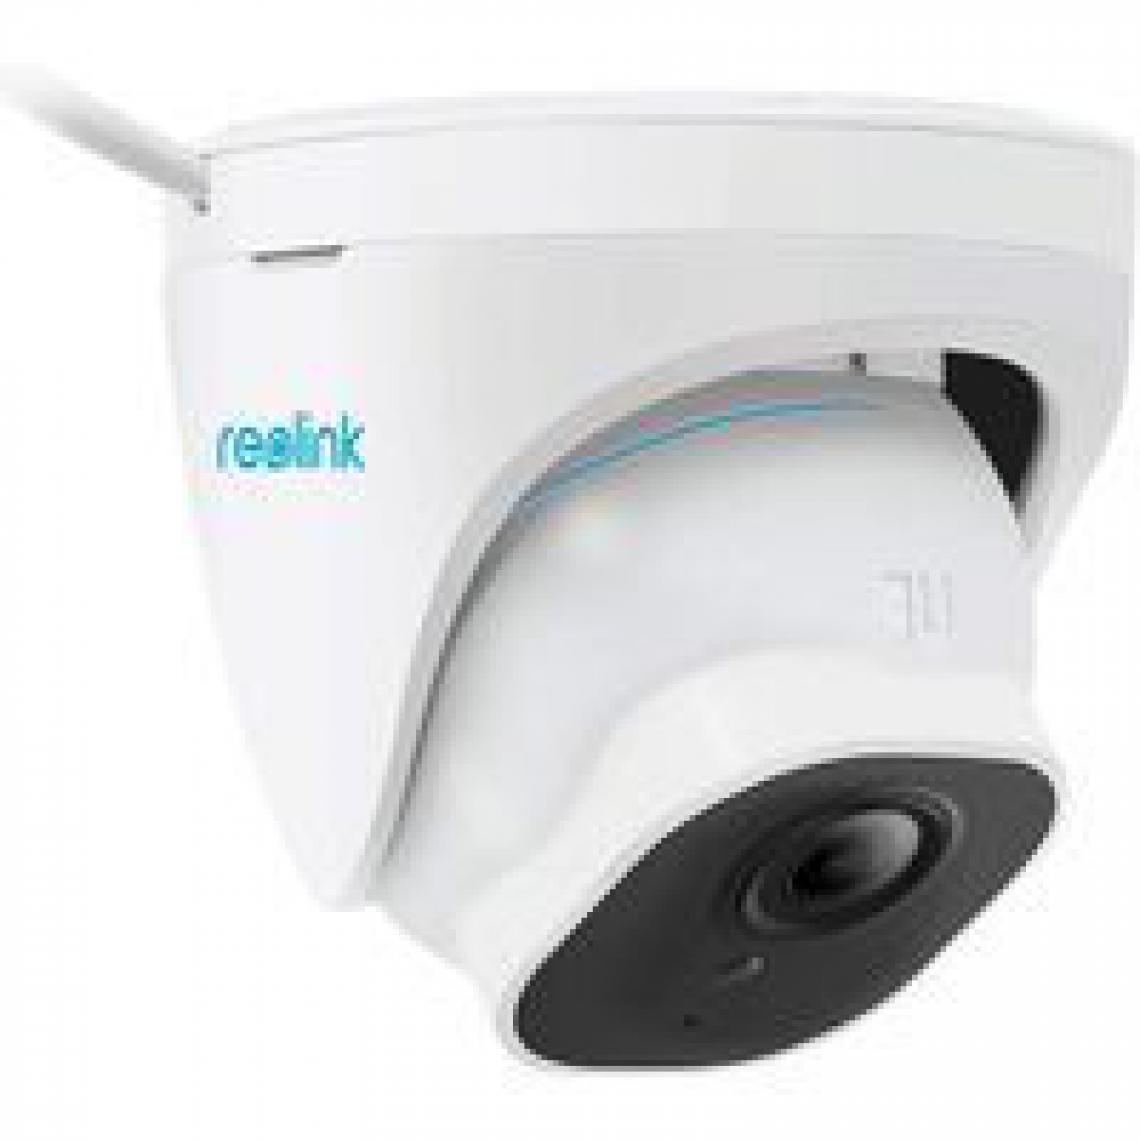 Reolink - Caméra de Surveillance 4K/8MP Extérieure PoE 3X Zoom Optique - RLC-822A -Détection Personne/Véhicule, Etanche IP66, Vision Nocturne IR - Caméra de surveillance connectée